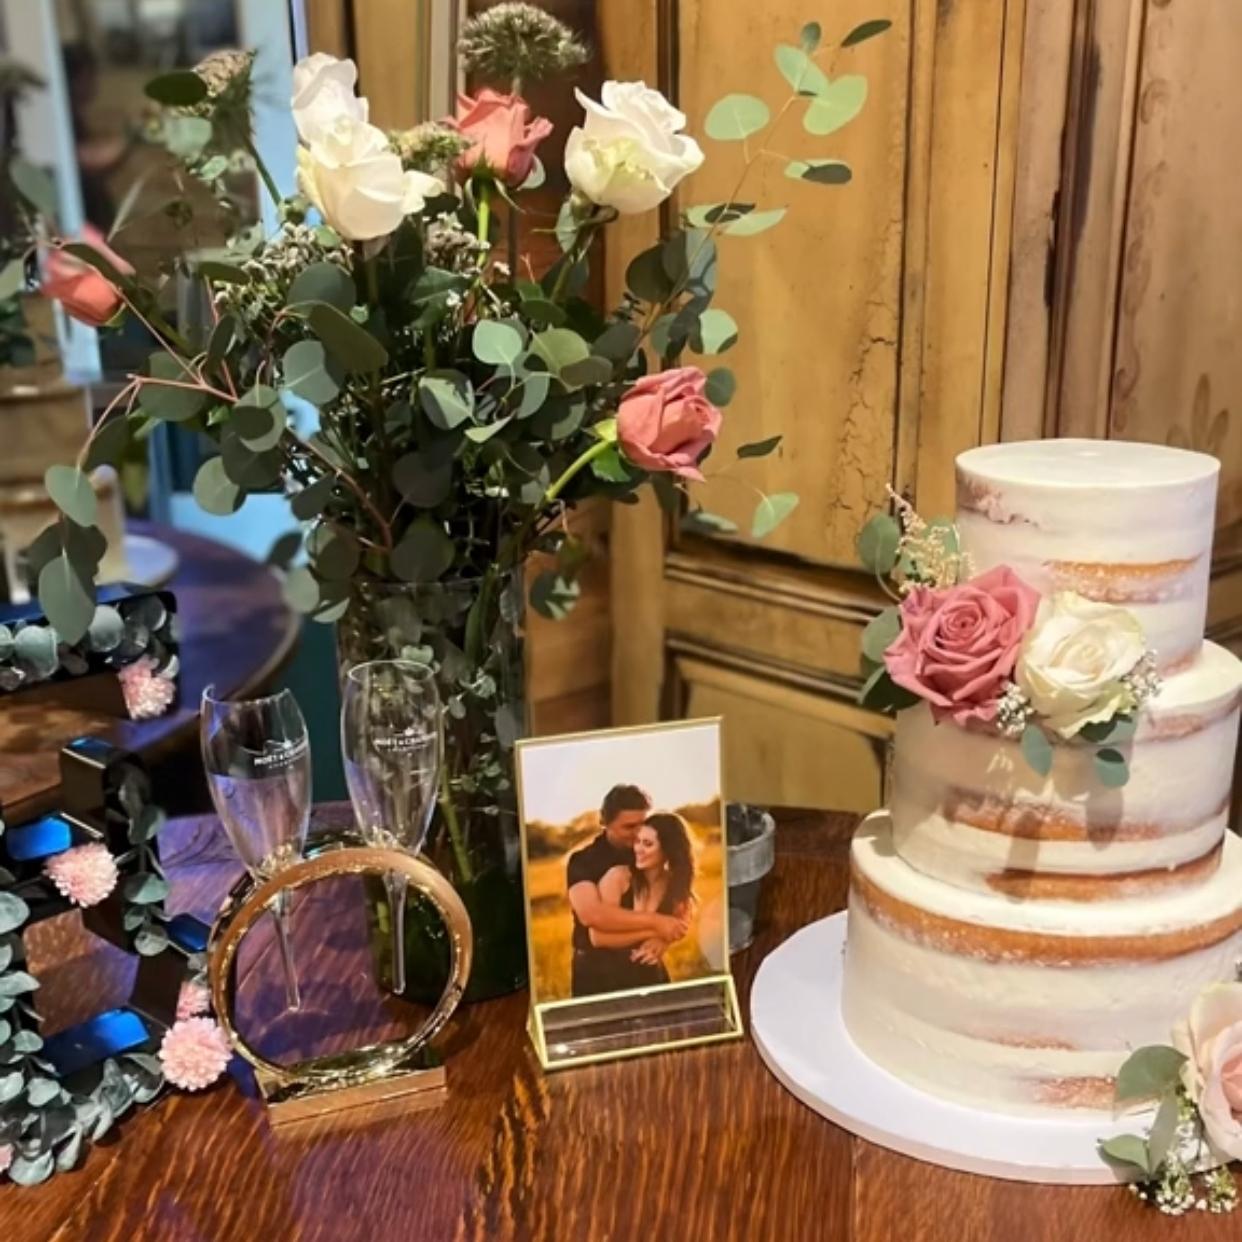 꽃과 샴페인 잔이 있는 웨딩 케이크 테이블